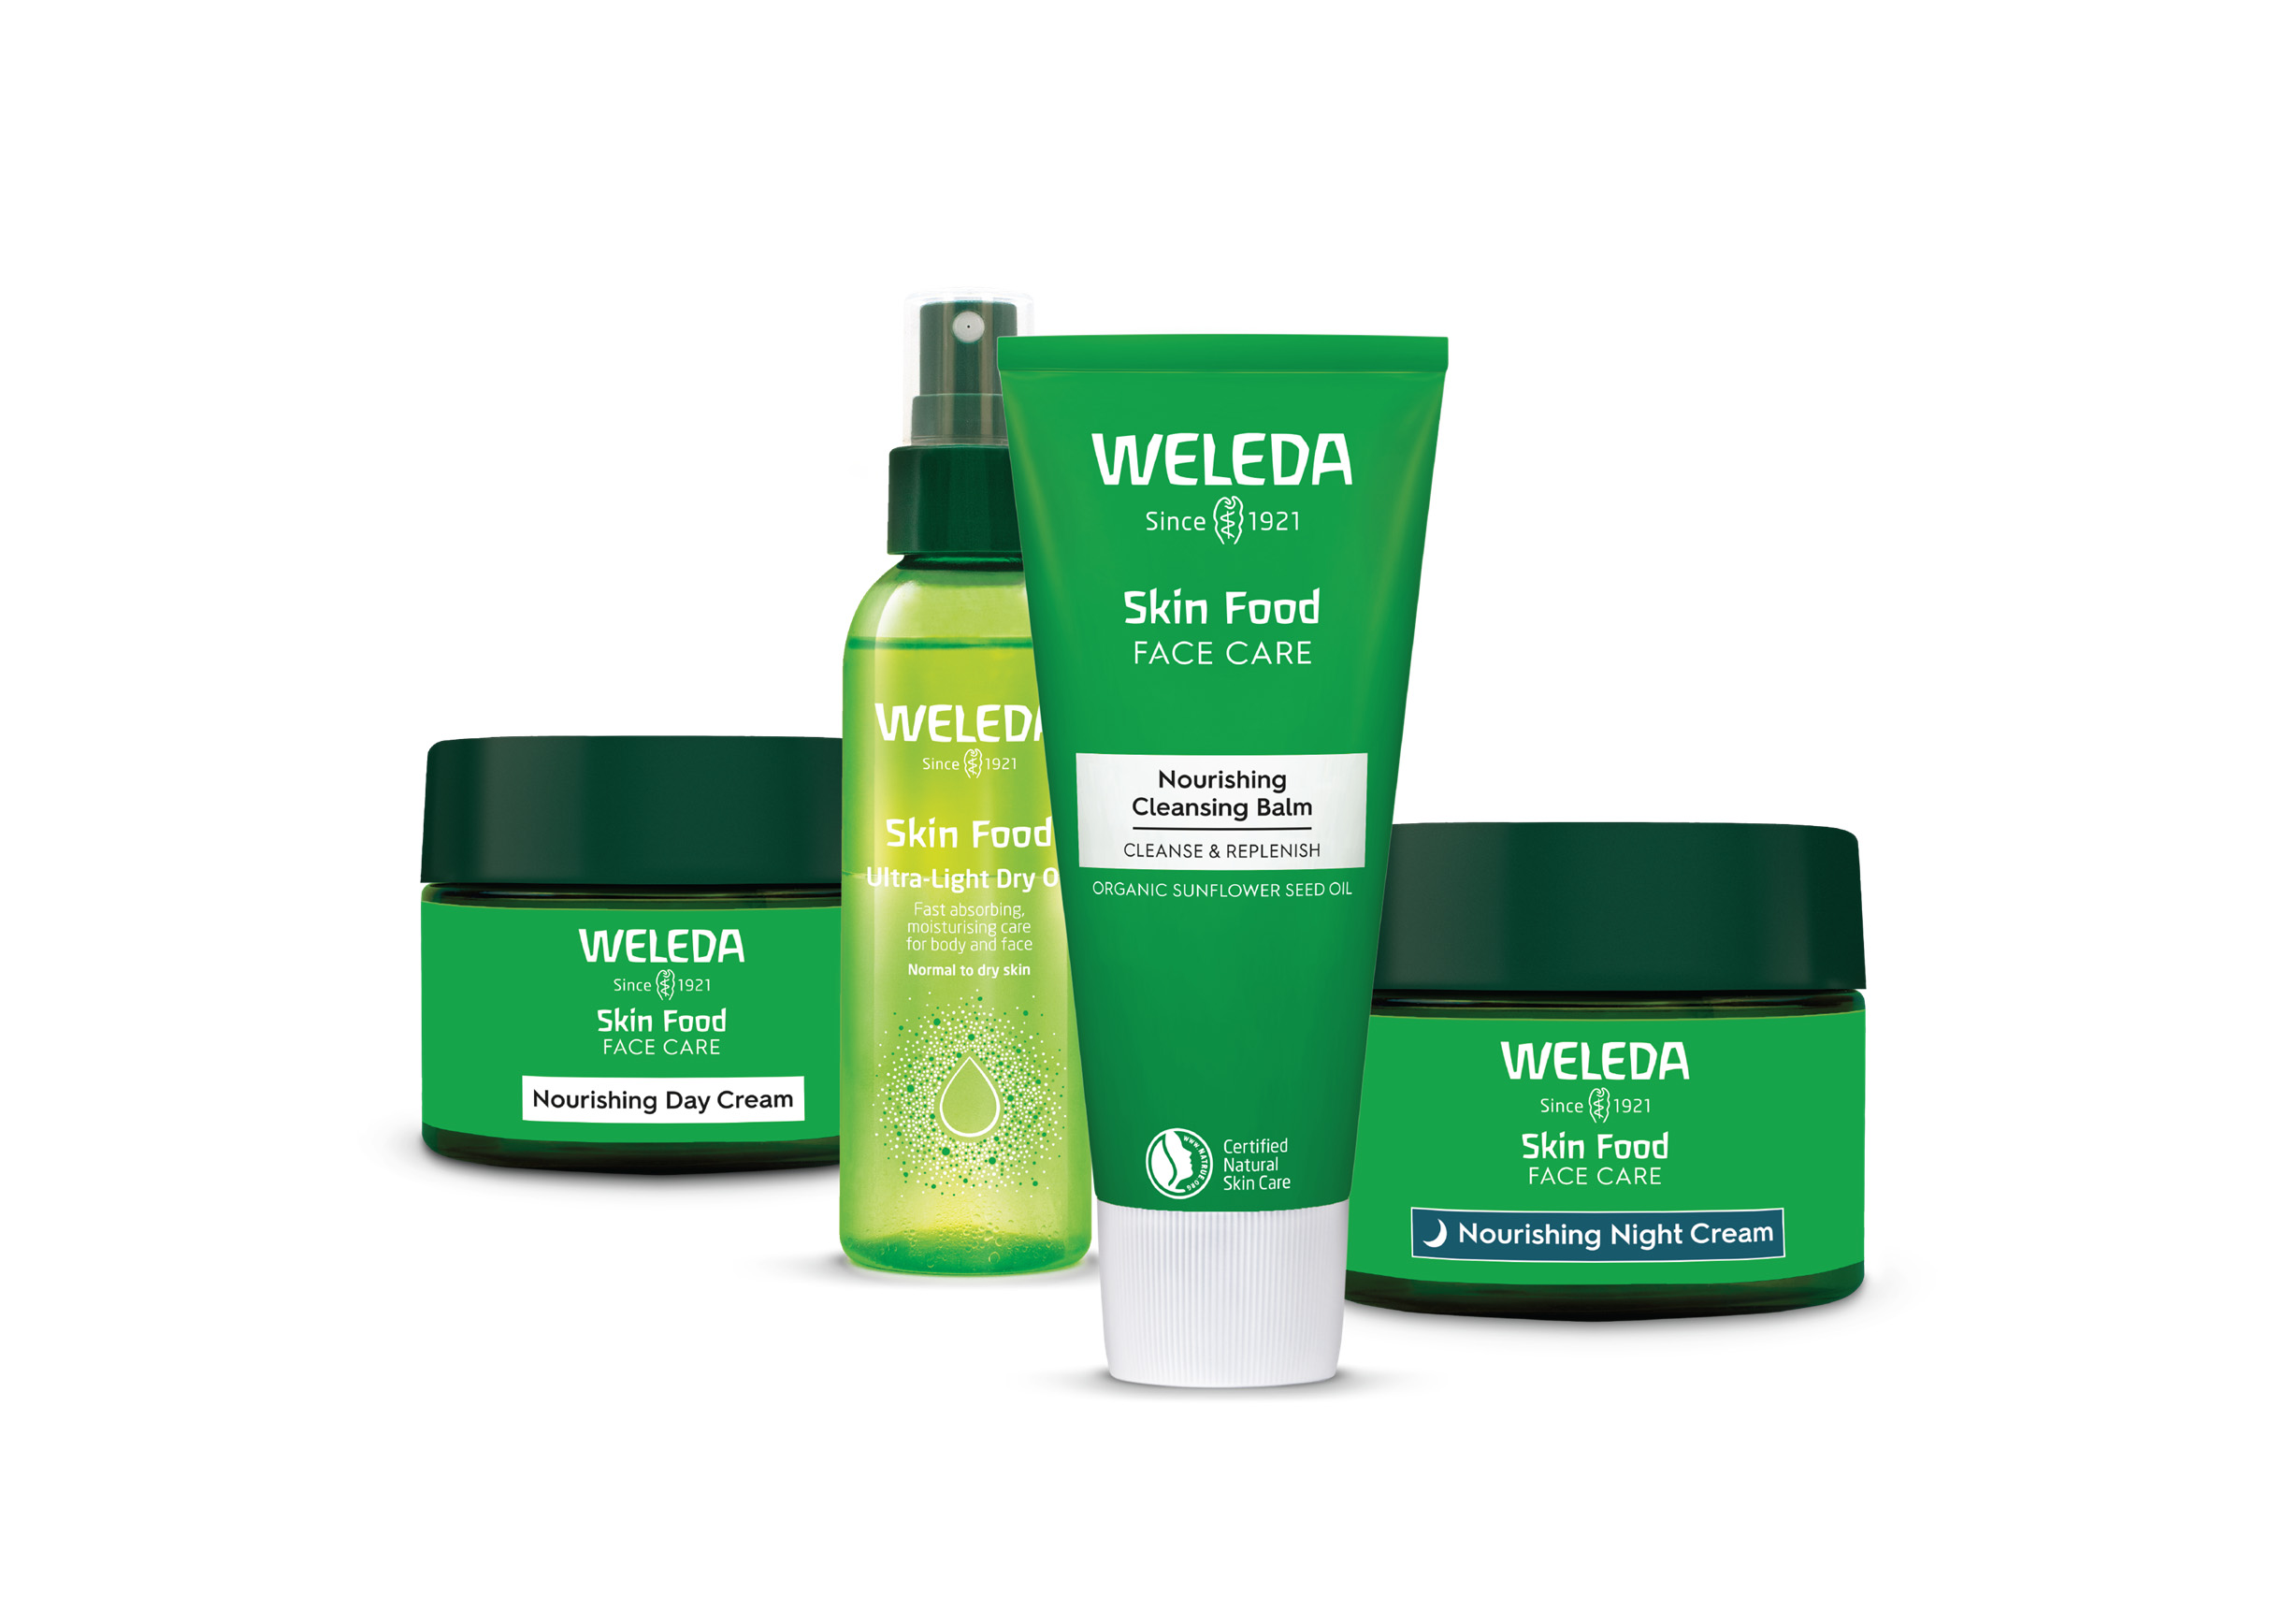 סדרת הסקין פוד של WELEDA מתרחבת עם השקת סדרה לשיקום העור